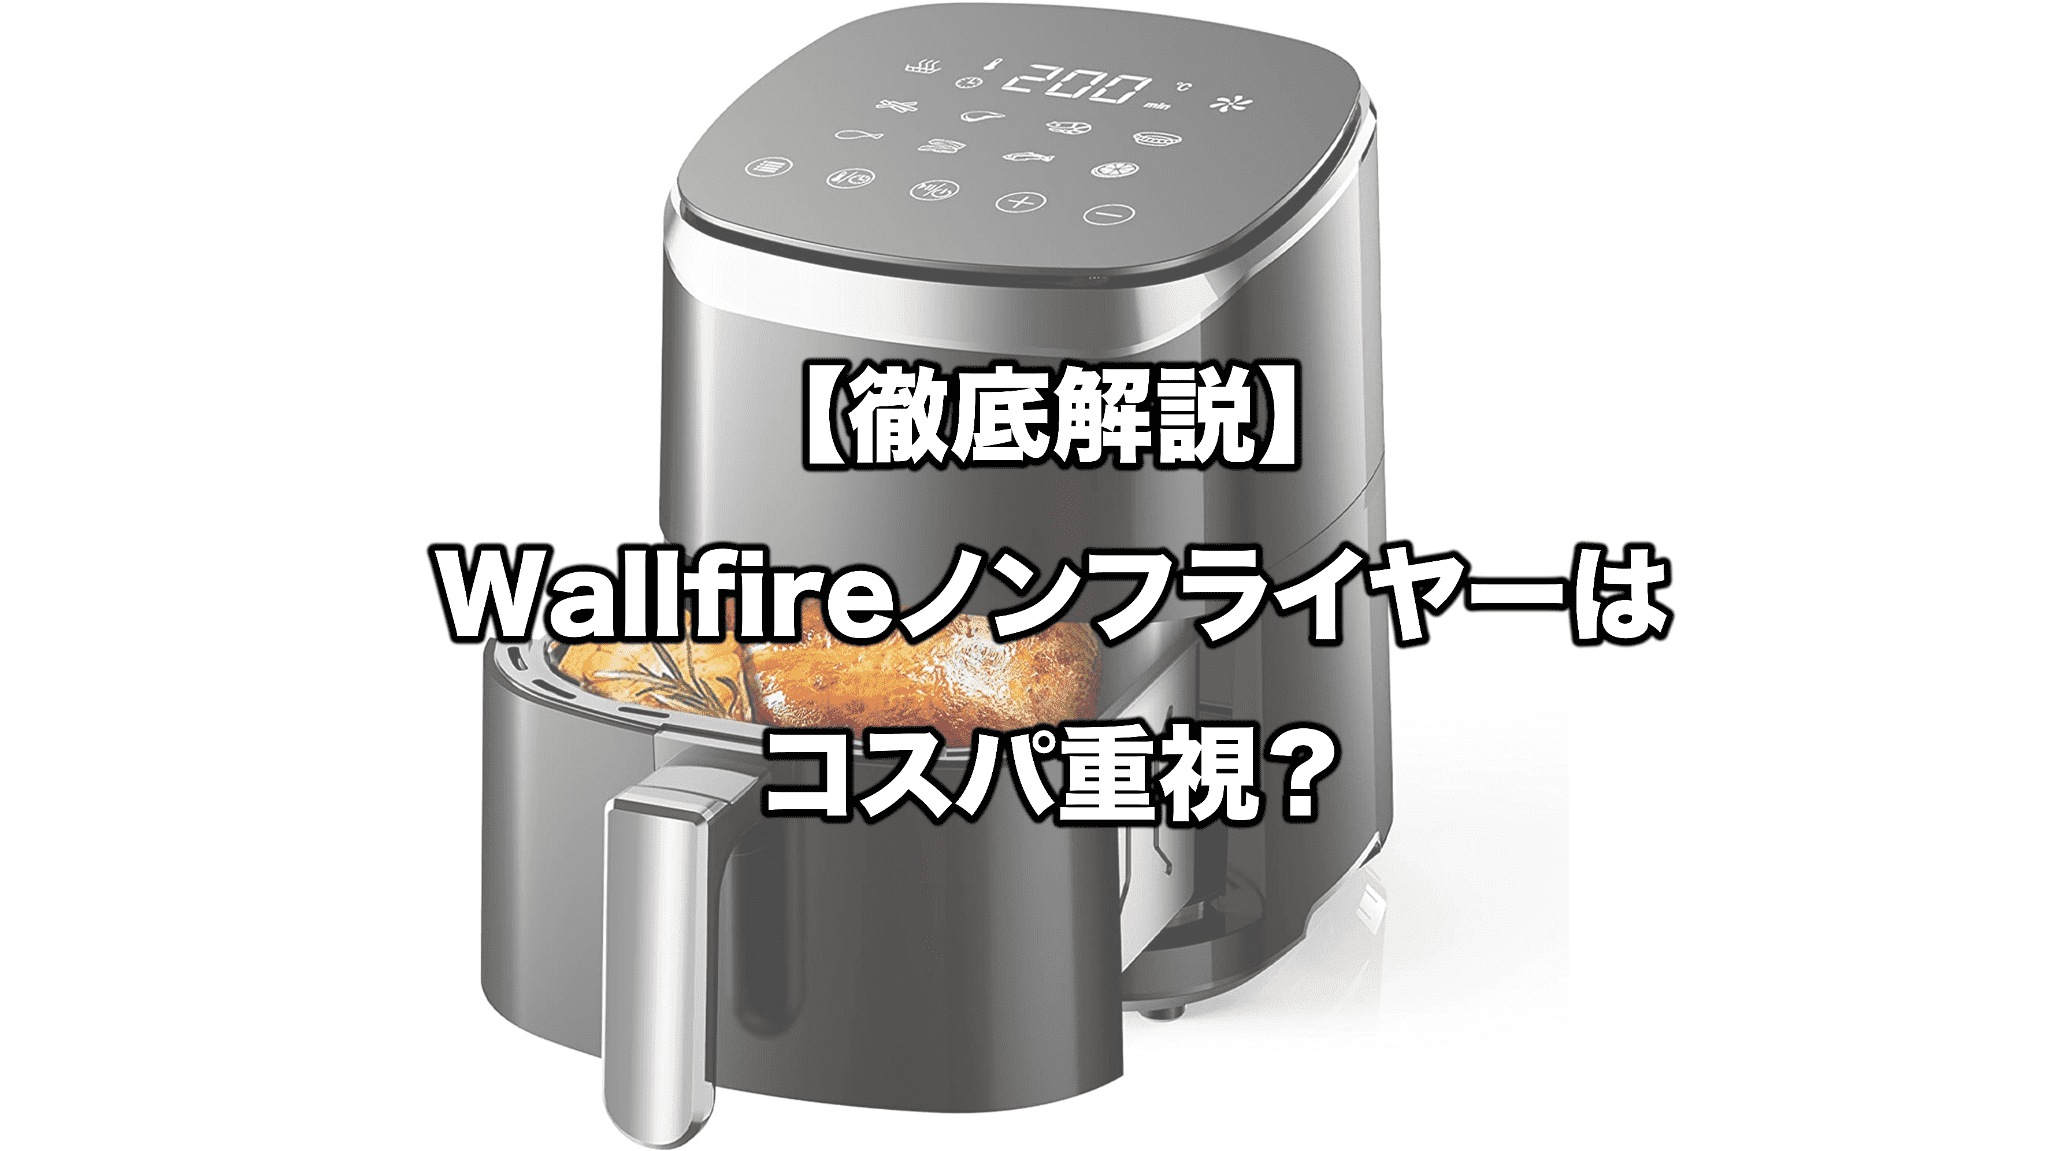 Wallfire KB2299ノンフライヤー 4.5L - 調理機器